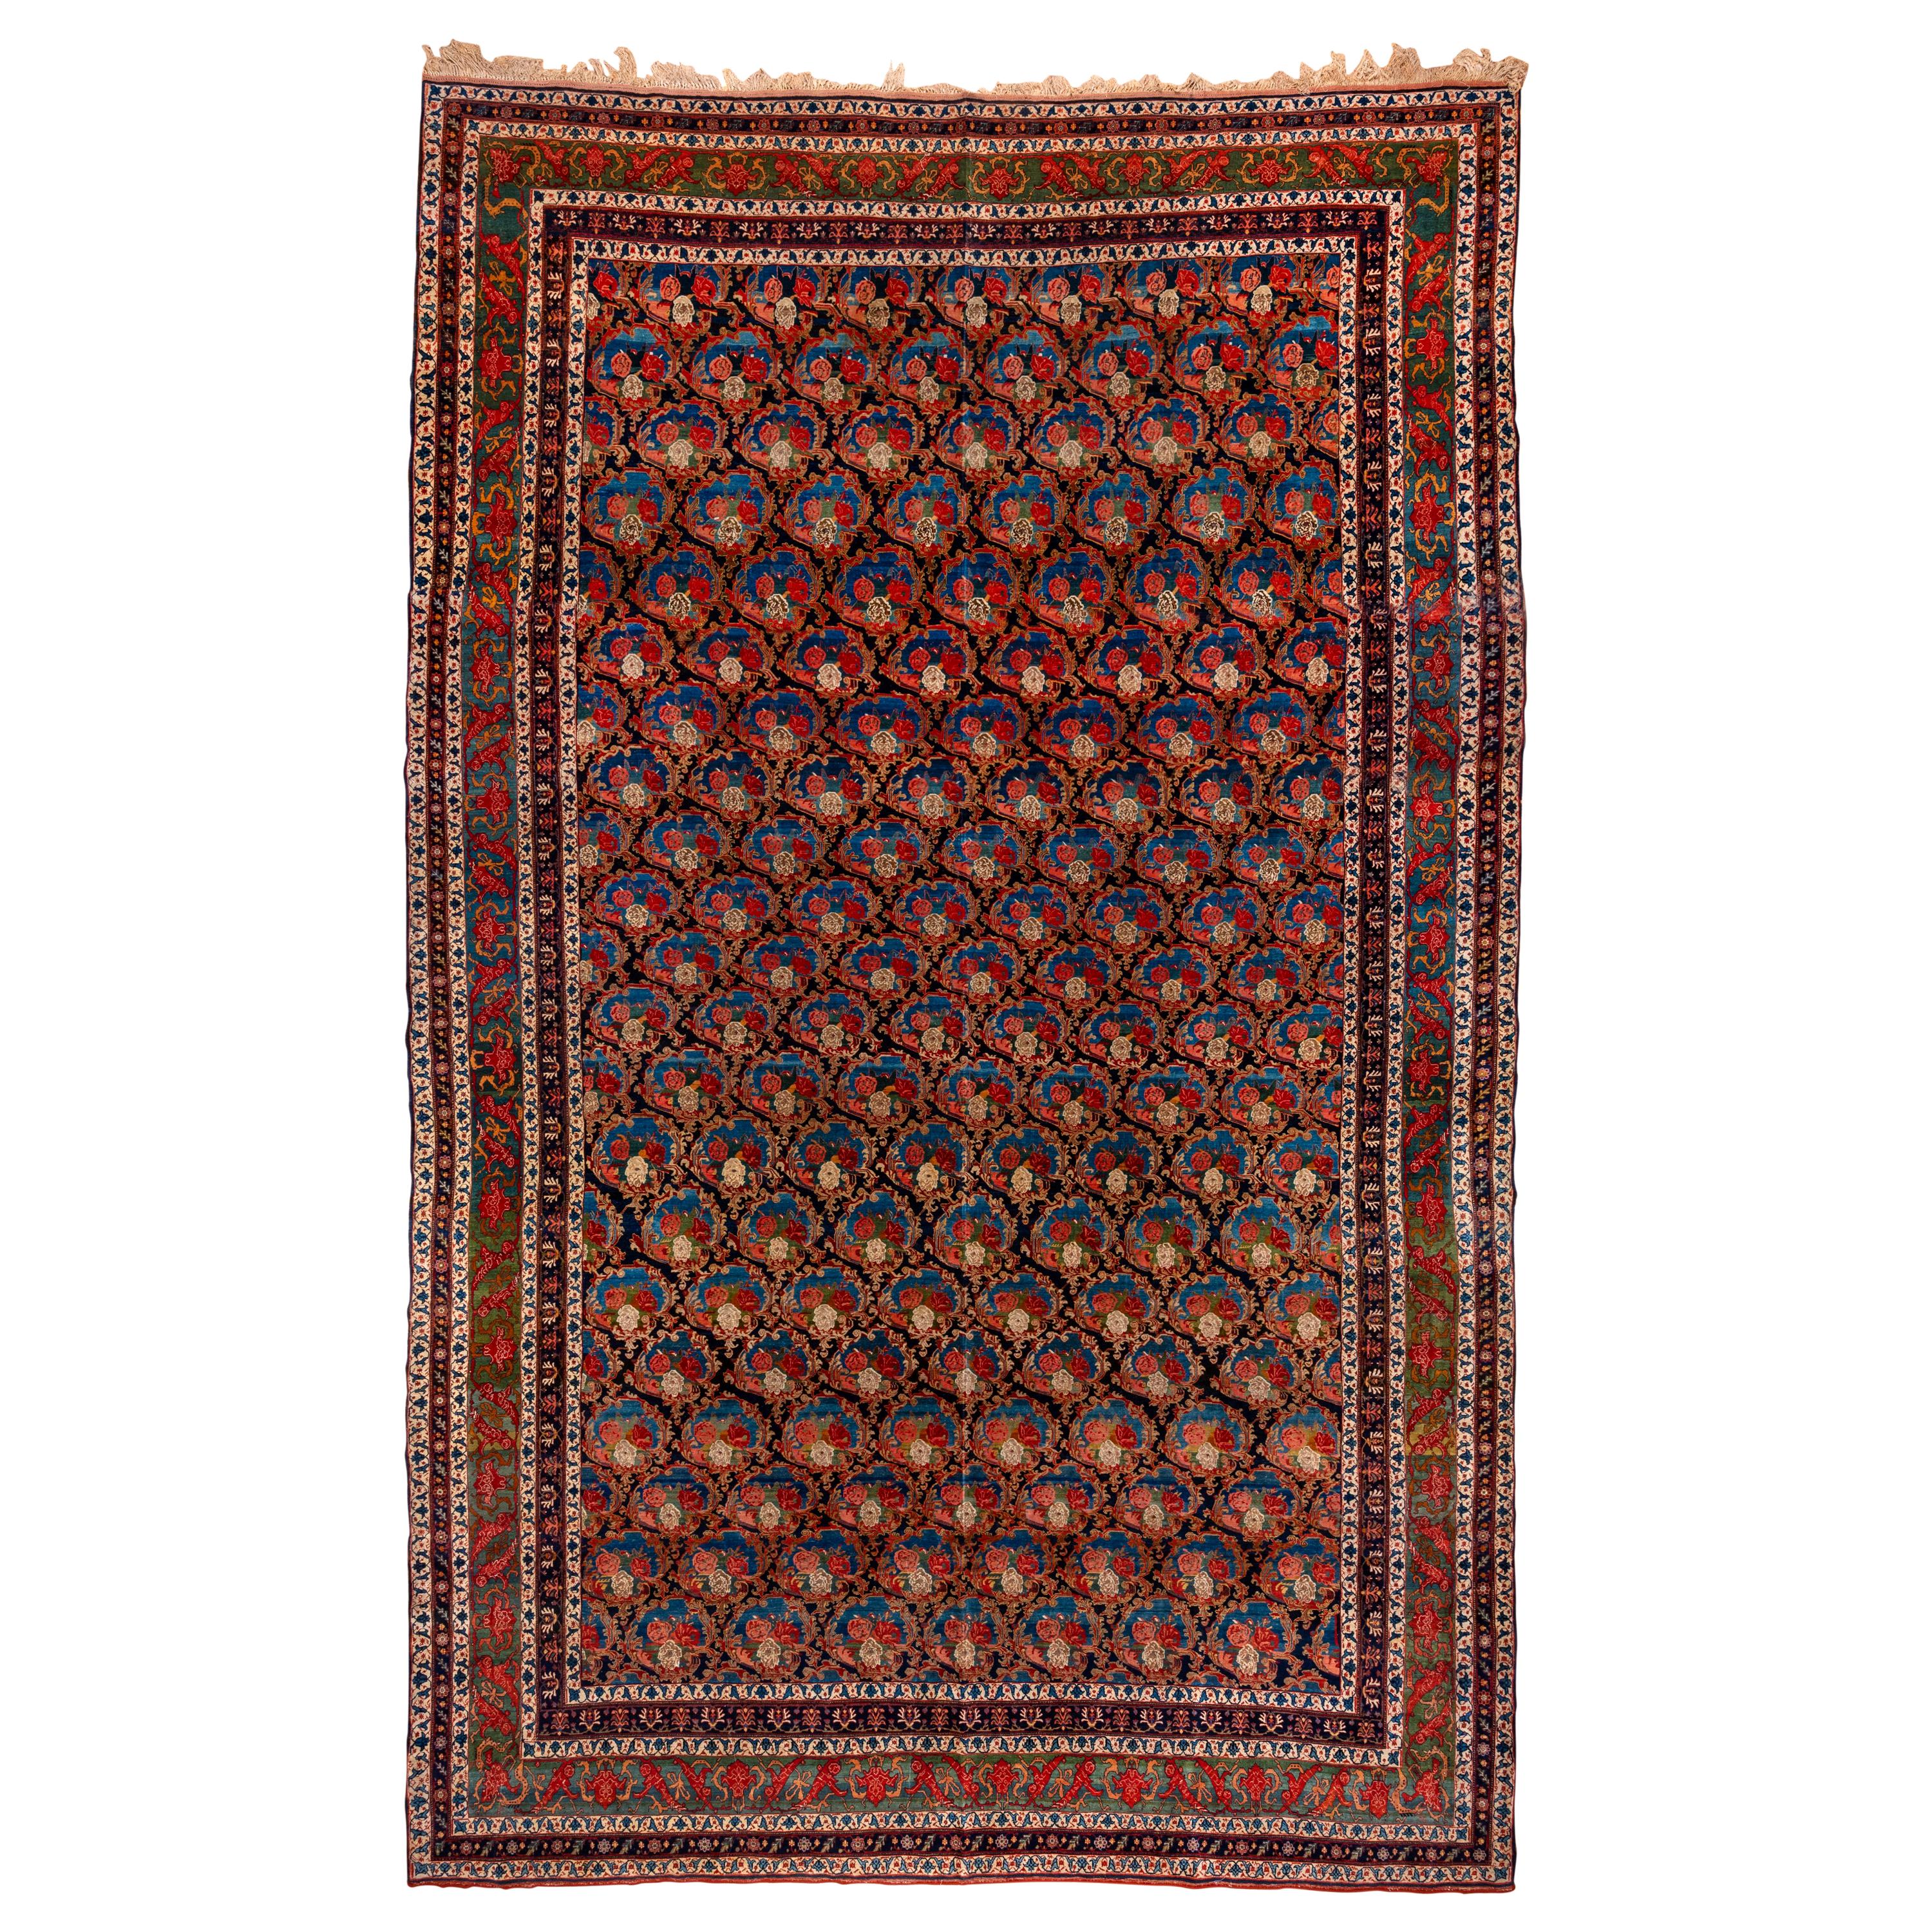 Early 20th Century Incredible Persian Bidjar Carpet, Tribal, circa 1900s For Sale